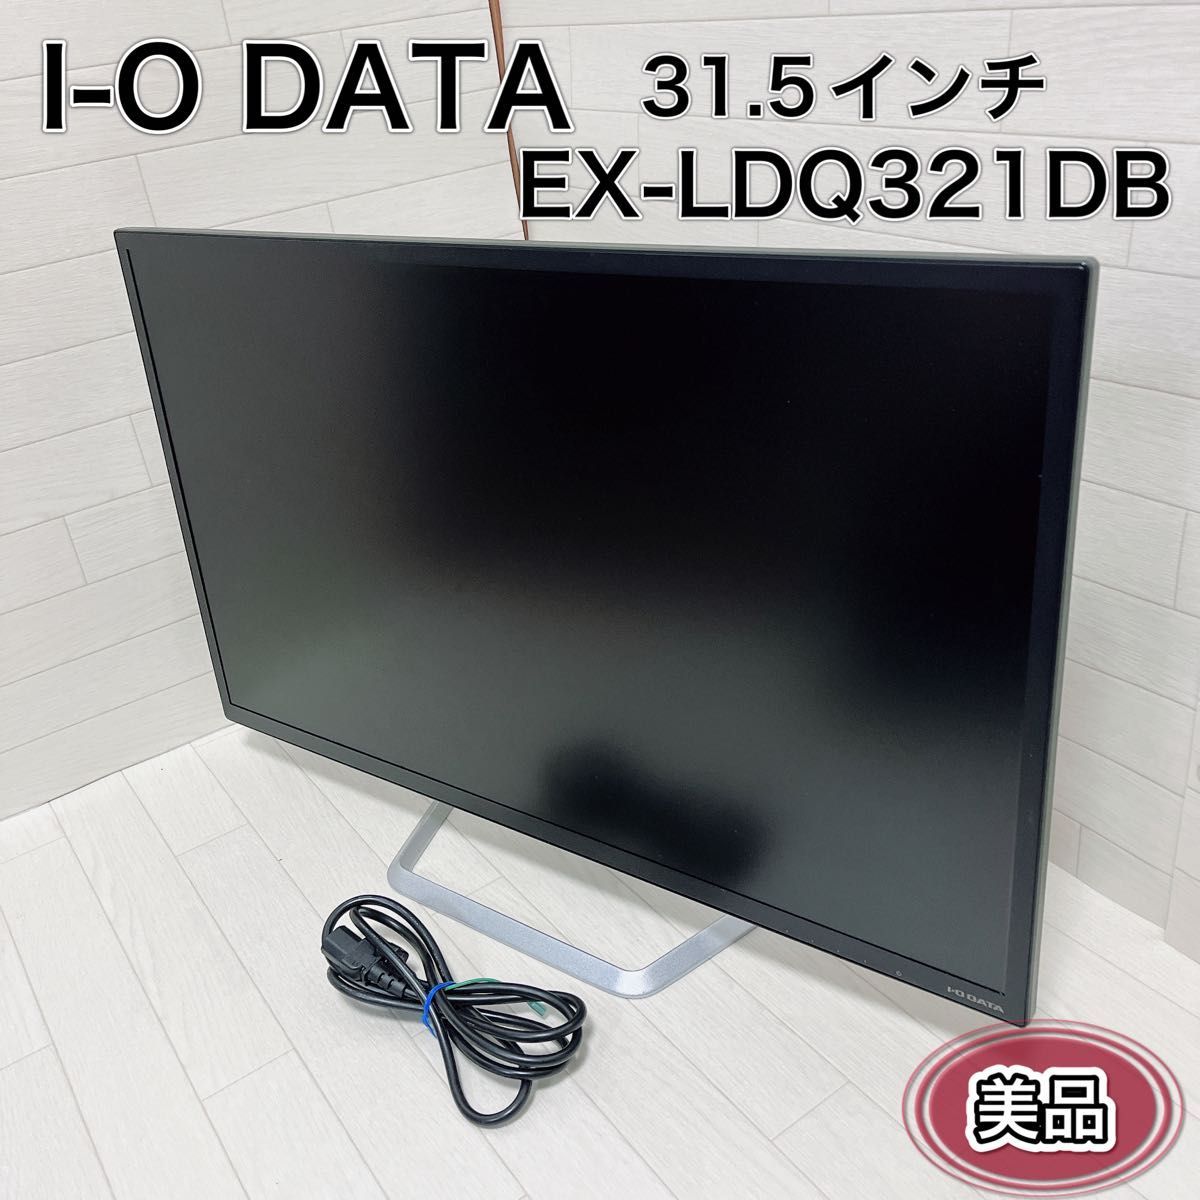 I-O DATA モニター 31.5インチ EX-LDQ321DB 良品